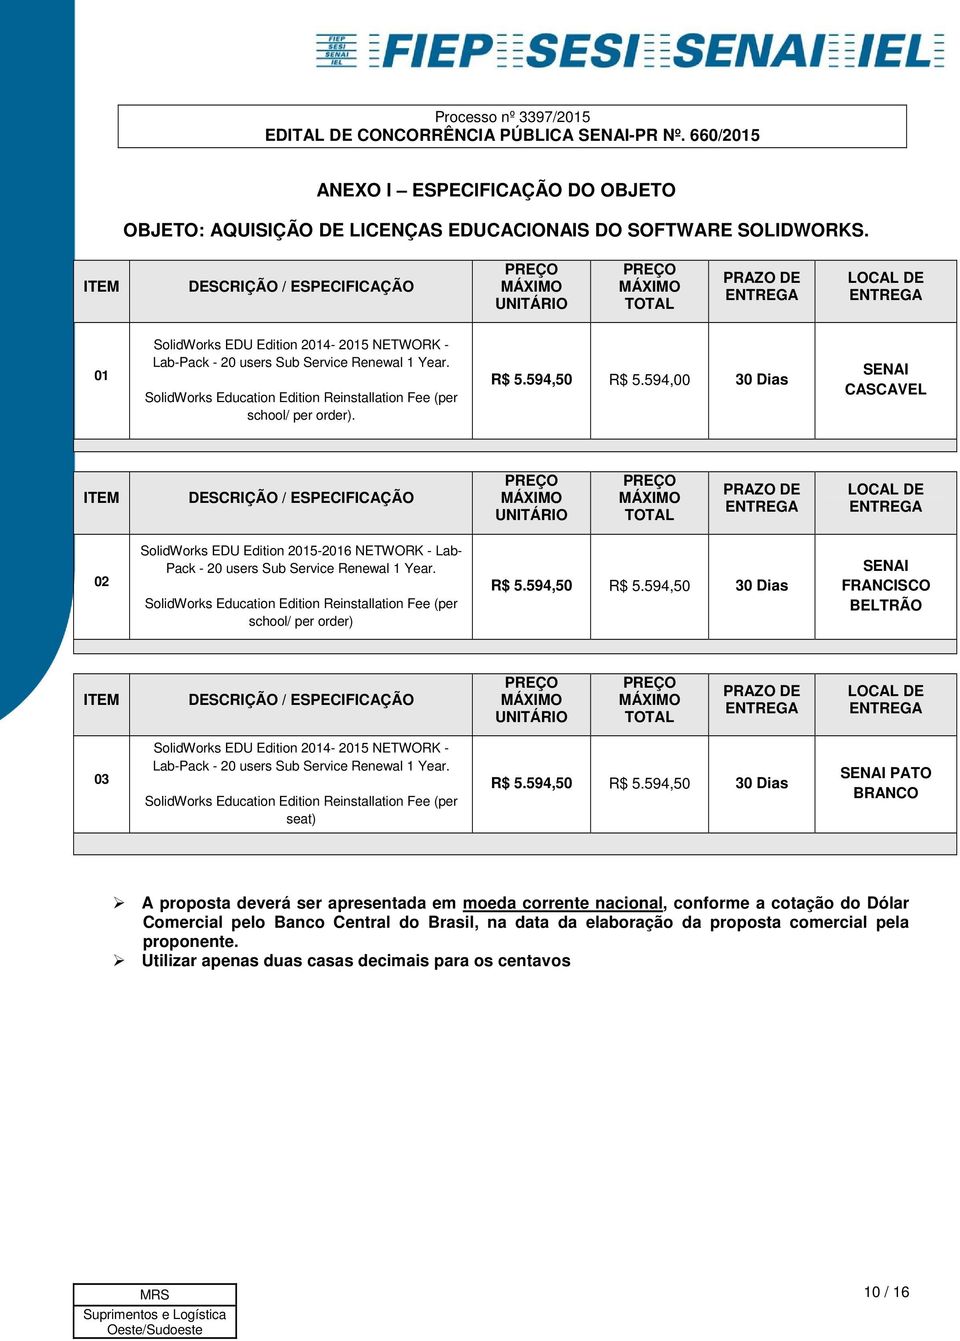 SolidWorks Education Edition Reinstallation Fee (per school/ per order). R$ 5.594,50 R$ 5.